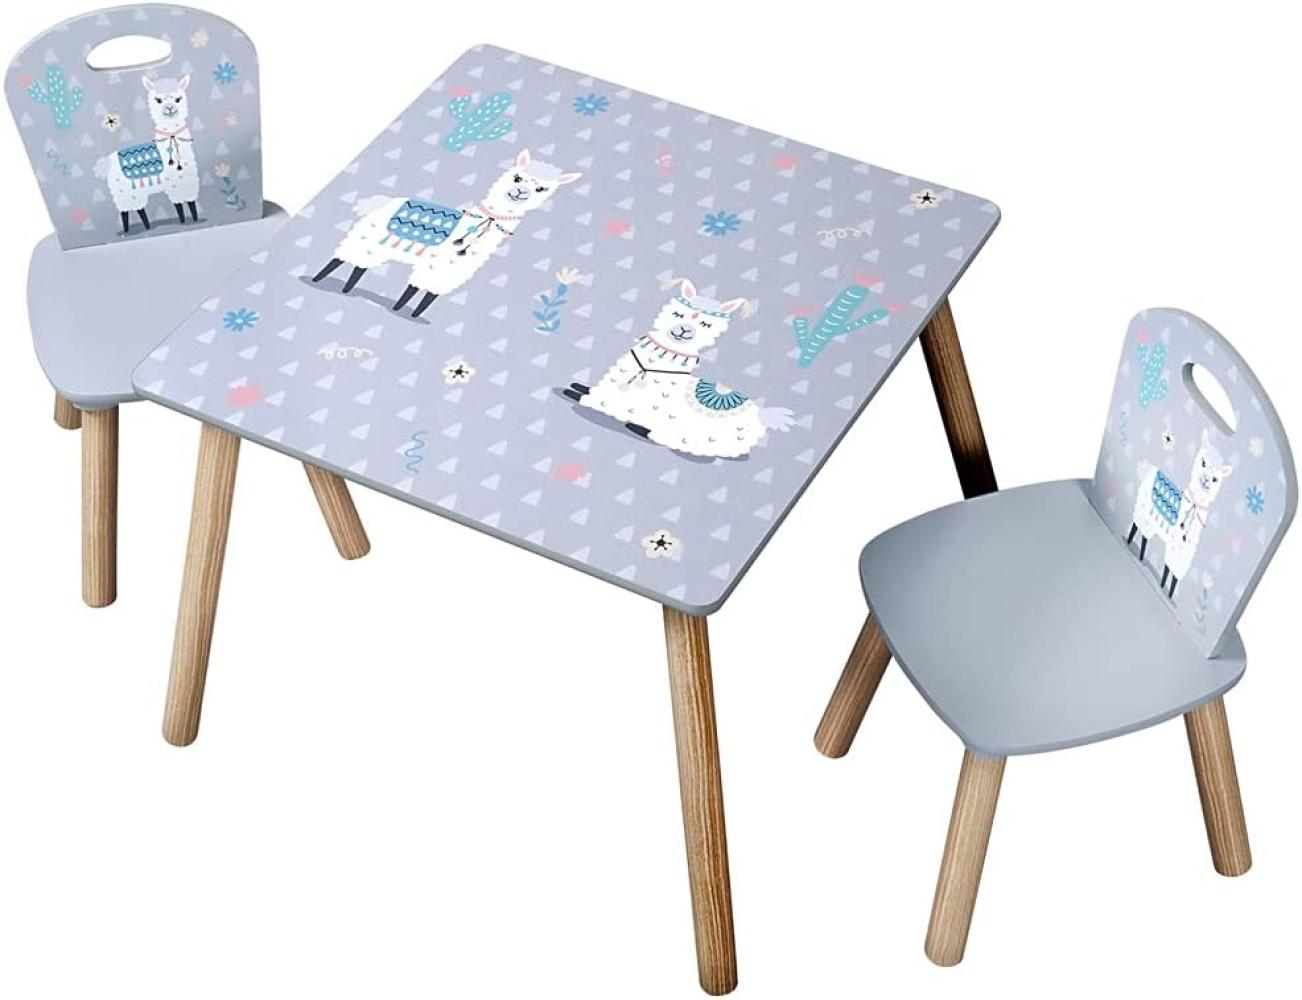 Kesper | Kindertisch mit 2 Stühlen, Material: Faserplatte, Maße: 55 x 55 x 45 cm, Motiv: Alpaka, Farbe: Grau | 17702 13 Bild 1